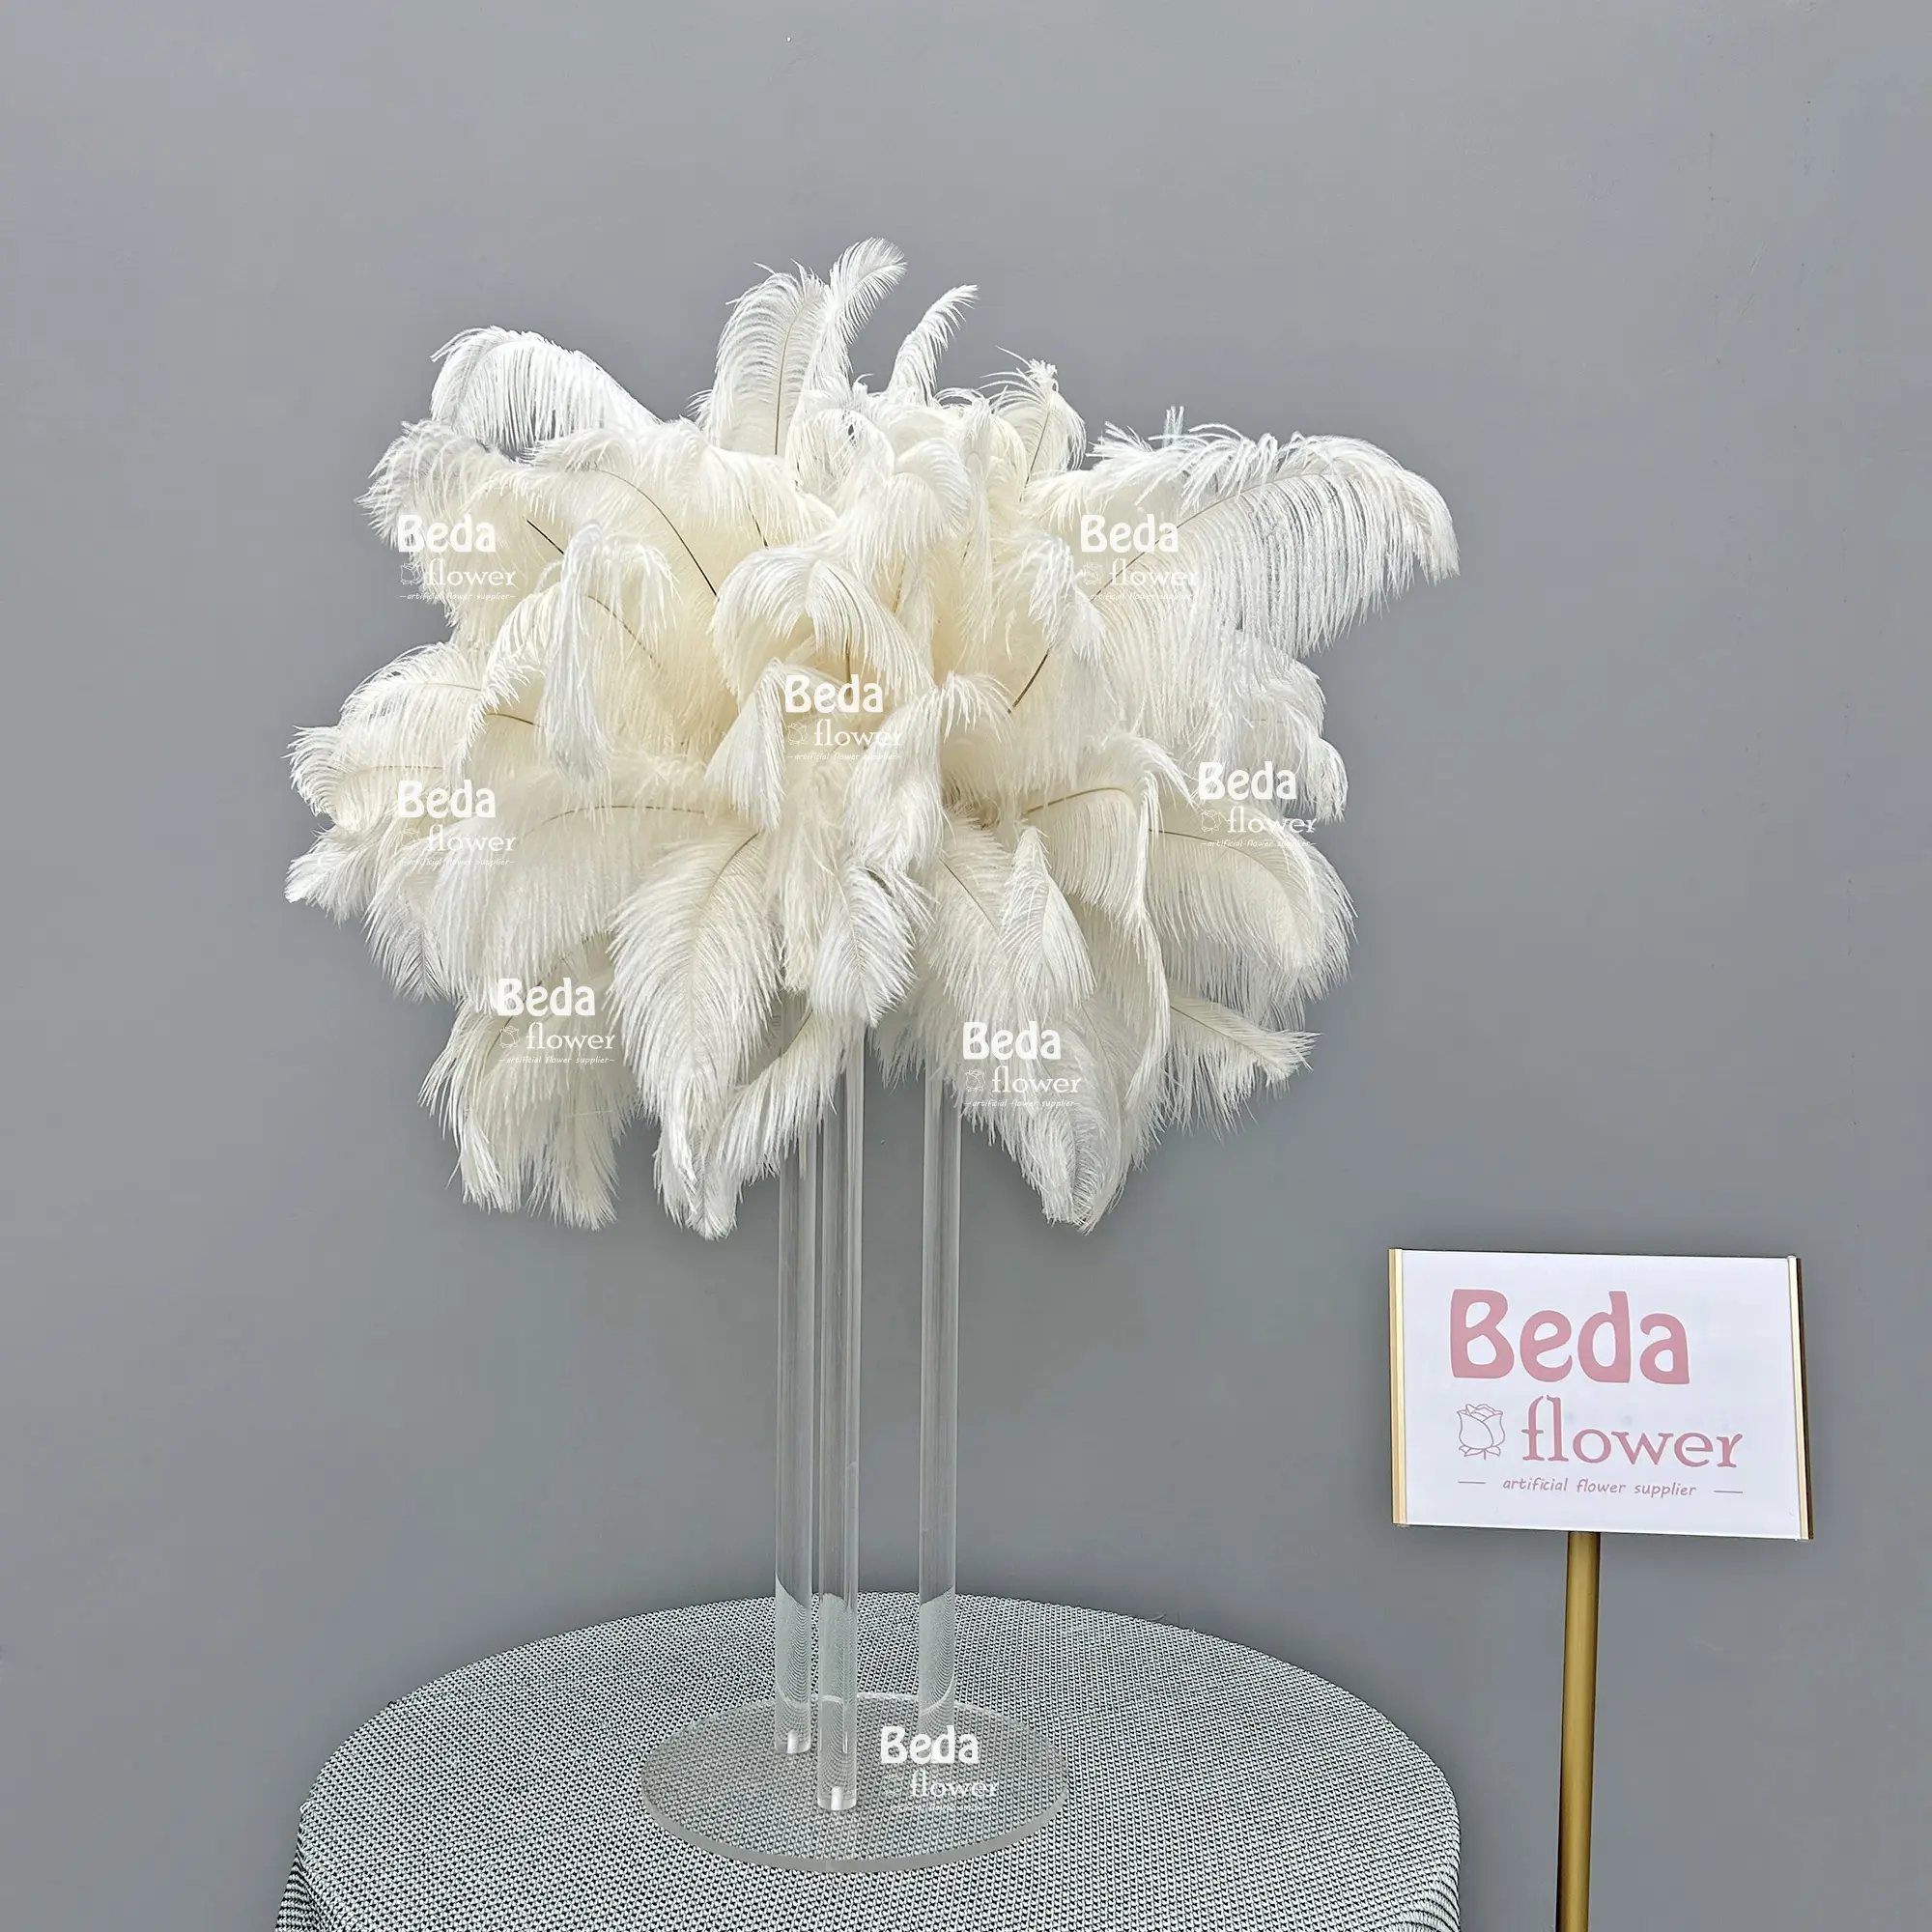 Beda fabbrica diretta palla fiore fiore fiore bianco centrotavola disposizione migliore vendita decorazione per eventi festa di nozze